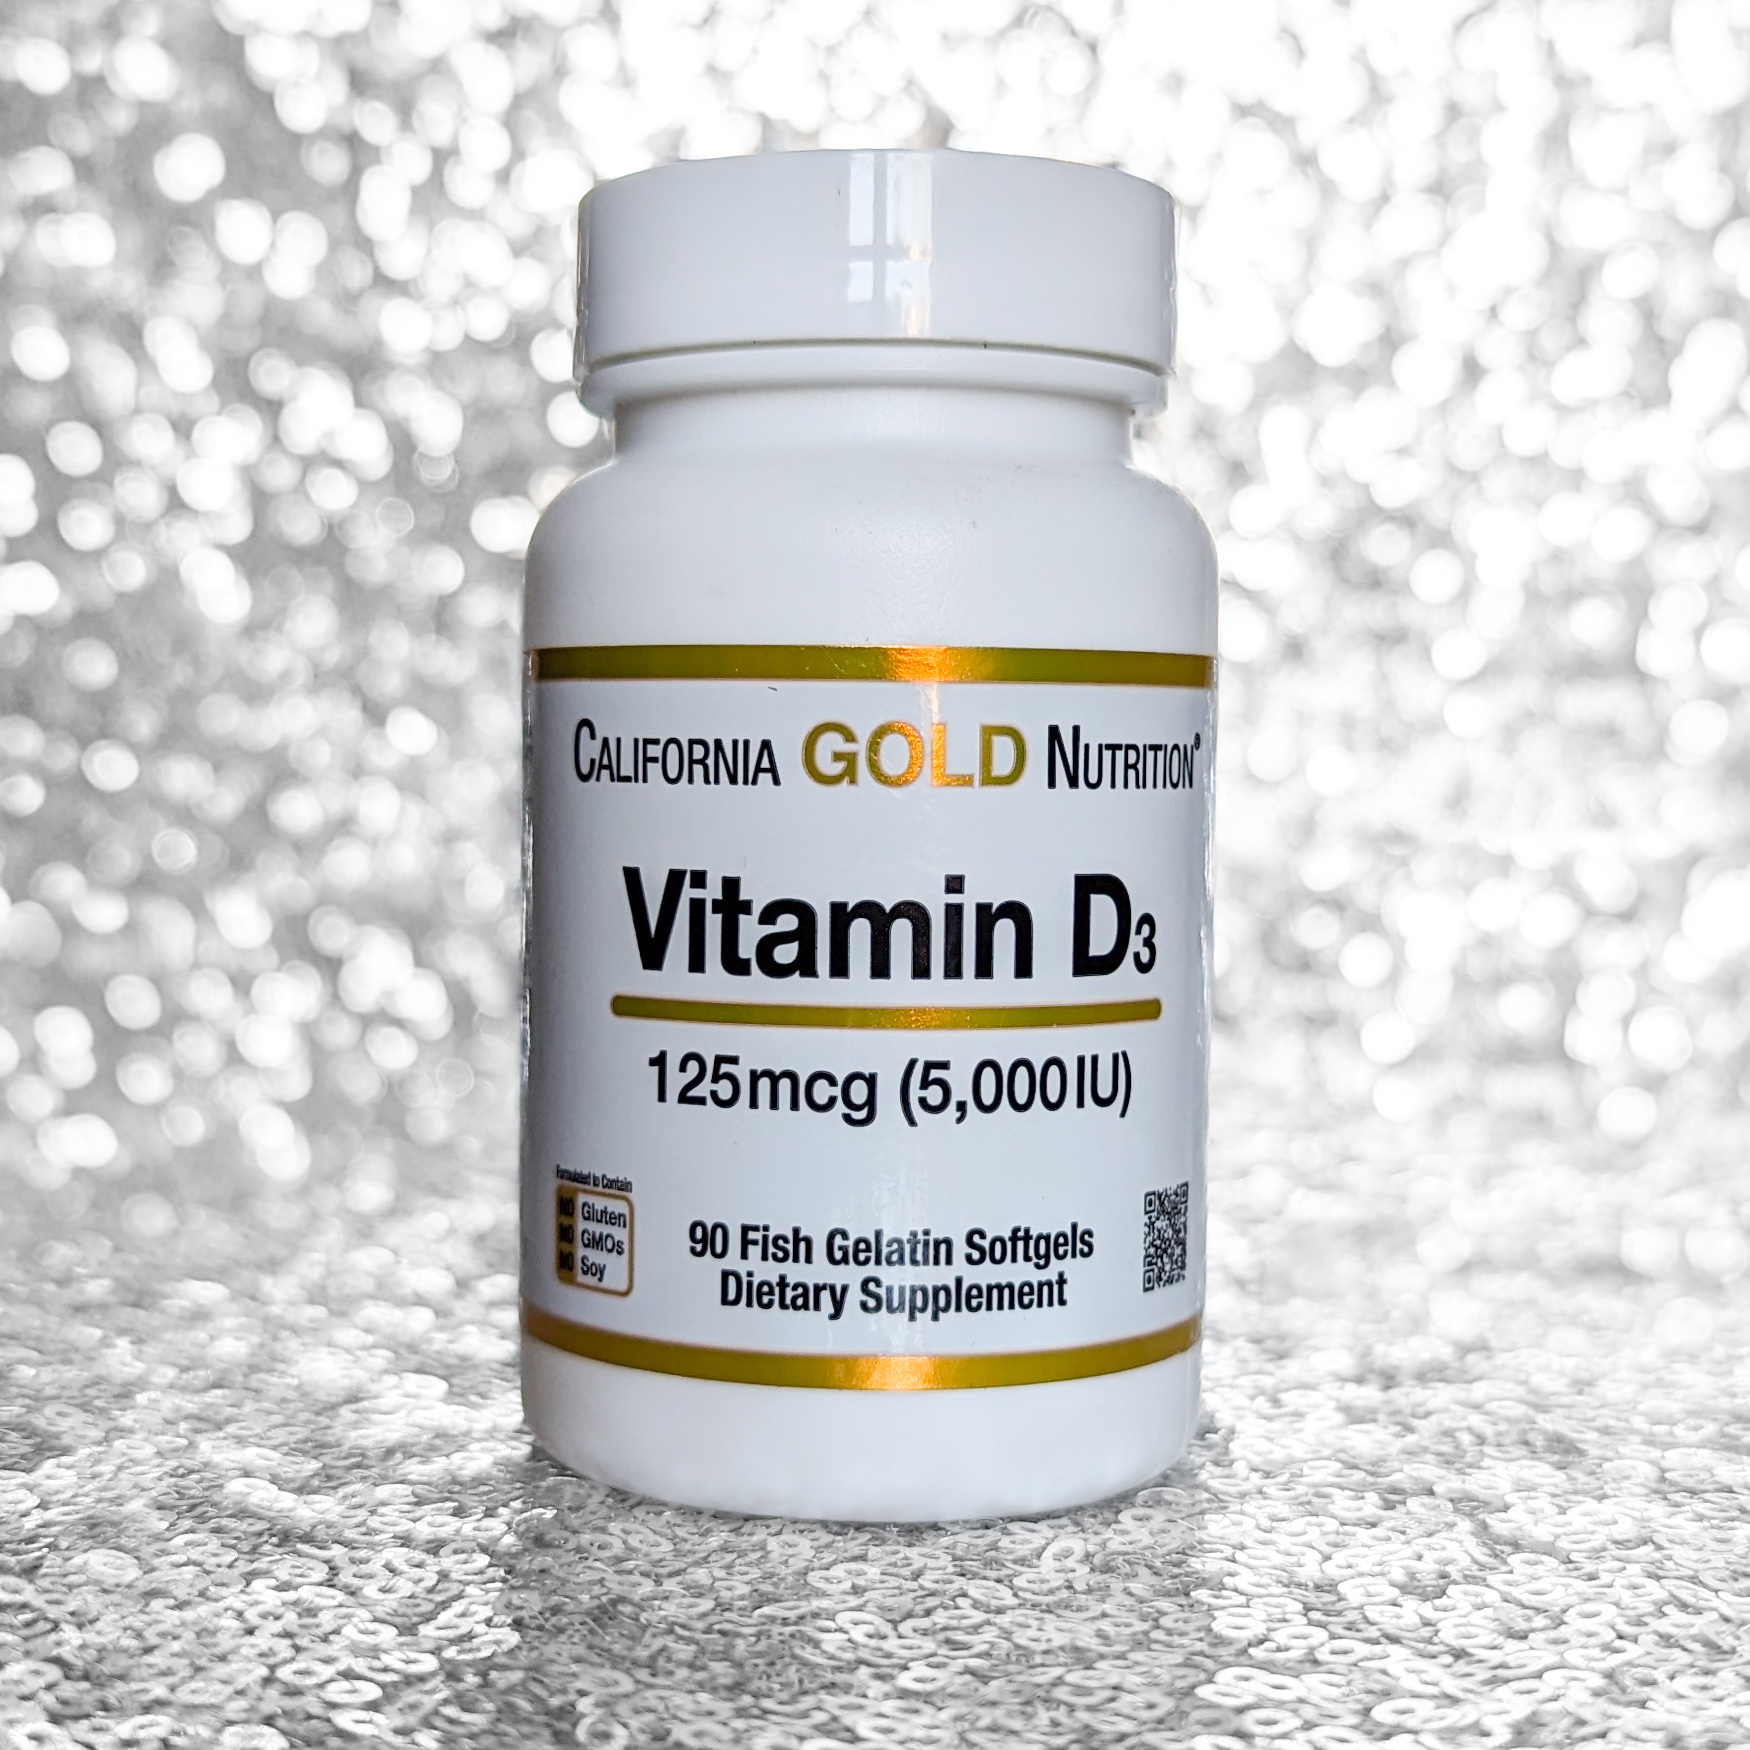 Вітамін D3 California Gold Nutrition: Допомога організму взимку